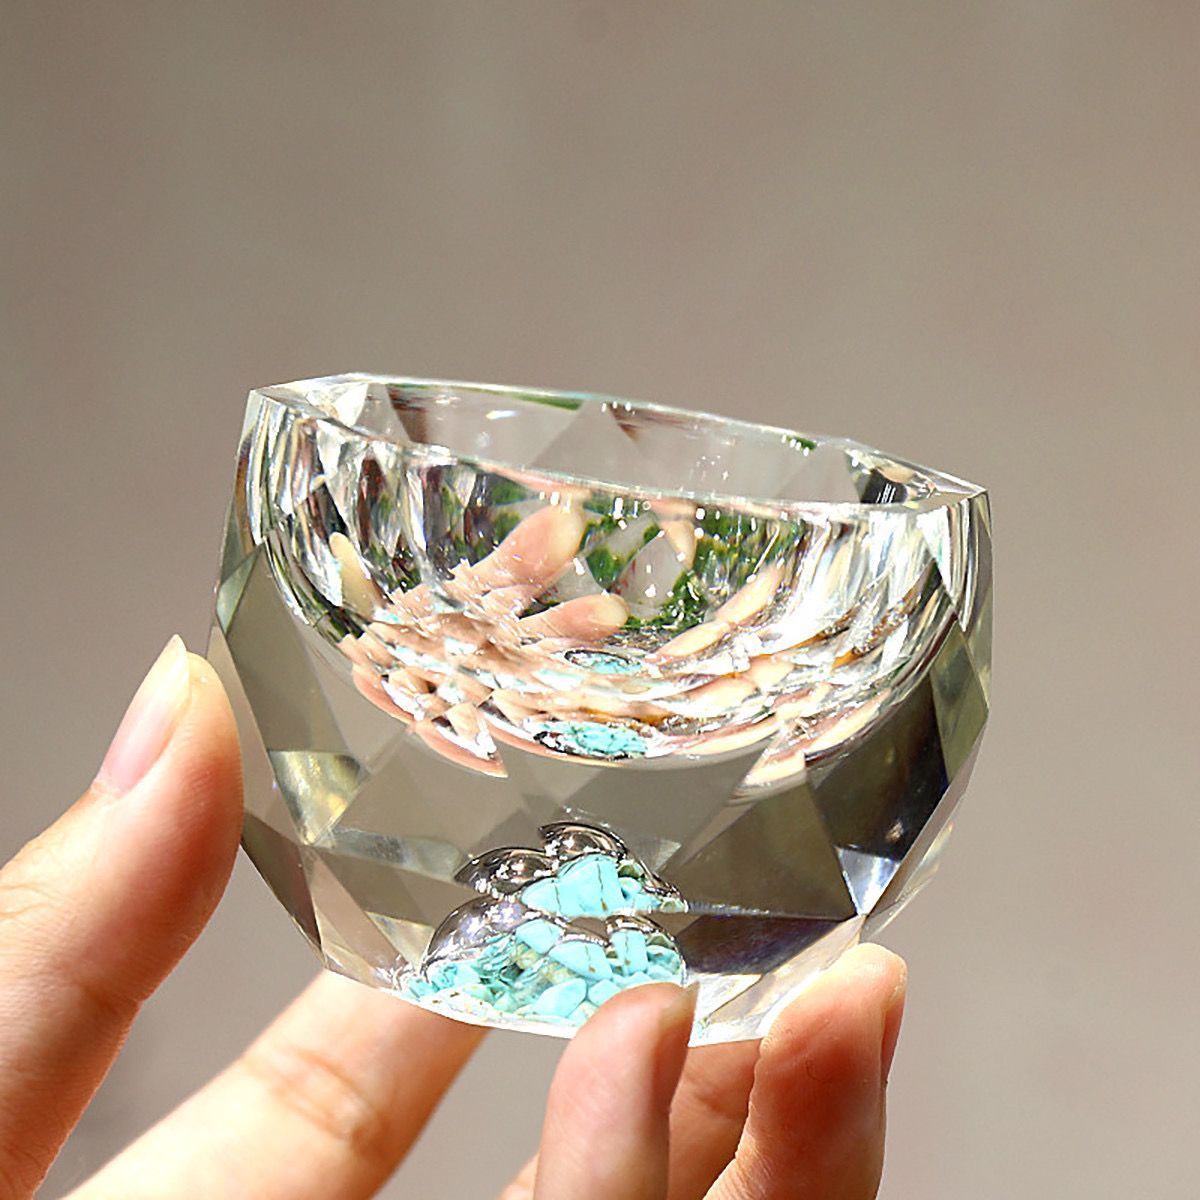 50 ml Diamond tagliente in cristallo bicchiere di liquore vodka vetro in vetro di vino in vetro whisky bicchiere sake soju brandy tè tazza